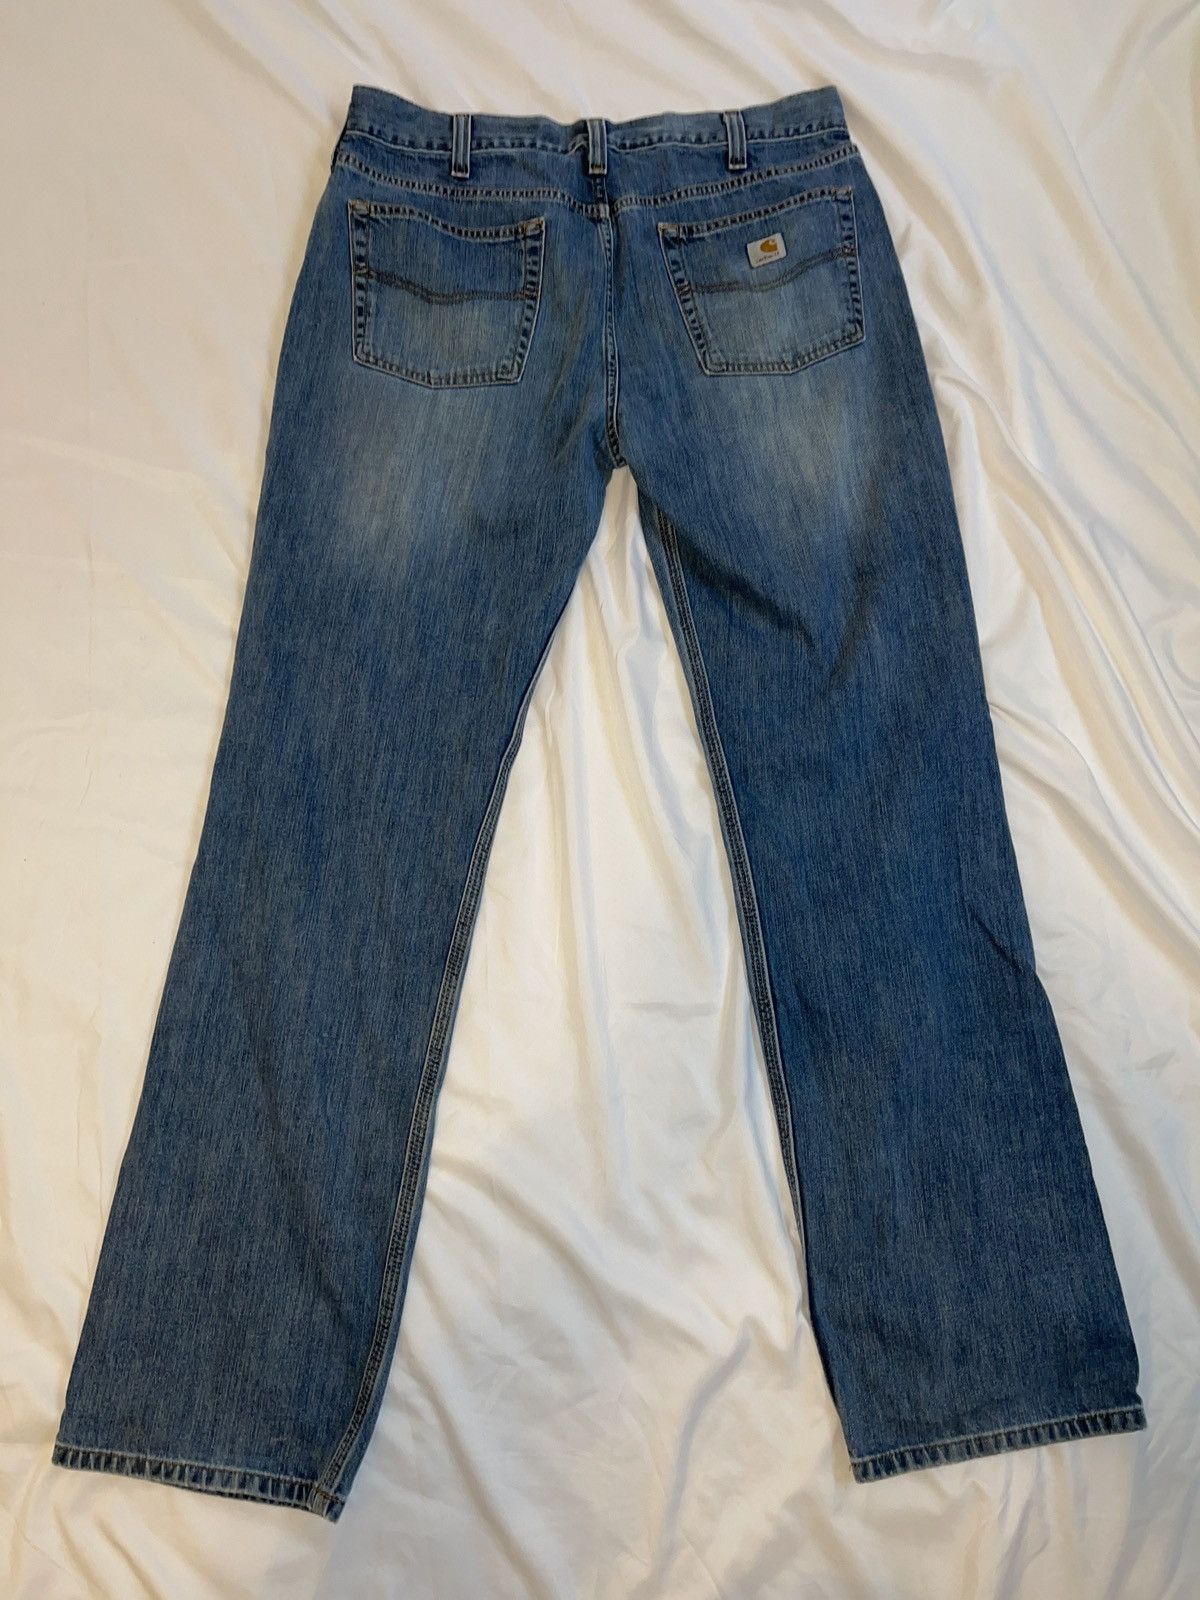 Vintage Vintage Carhartt Jeans Size US 36 / EU 52 - 2 Preview